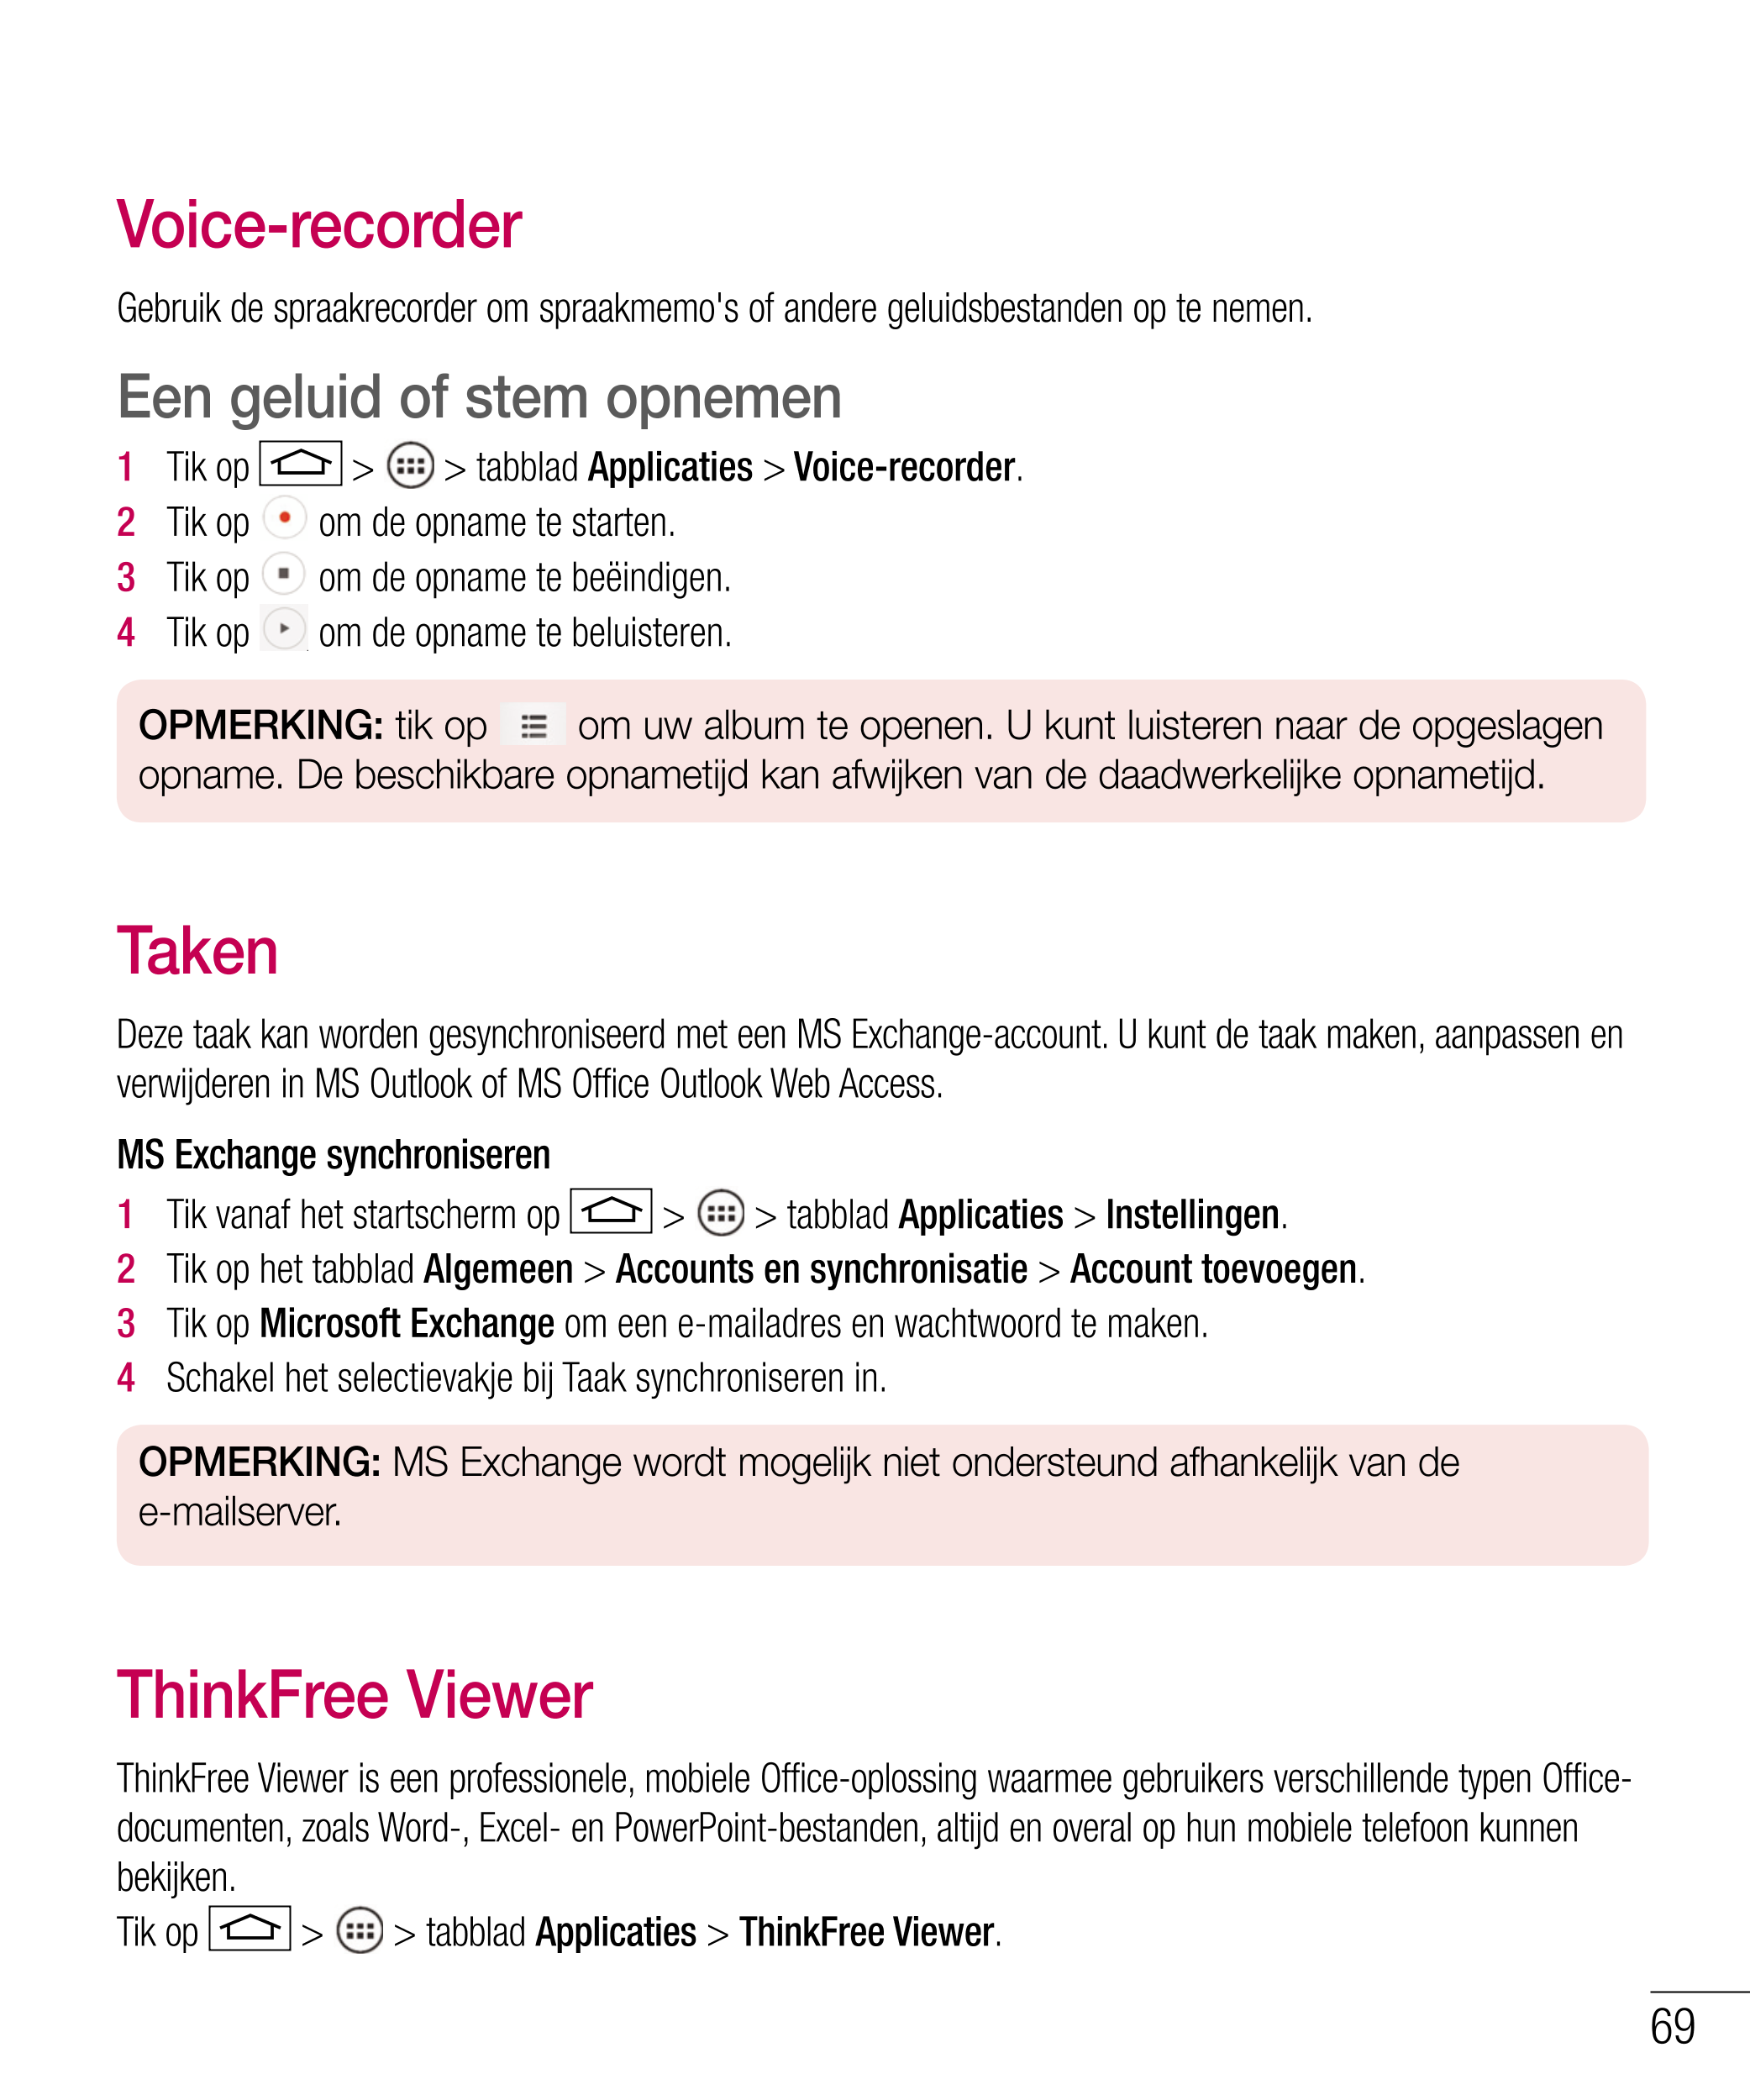 Voice-recorder
Gebruik de spraakrecorder om spraakmemo's of andere geluidsbestanden op te nemen.
Een geluid of stem opnemen
1   